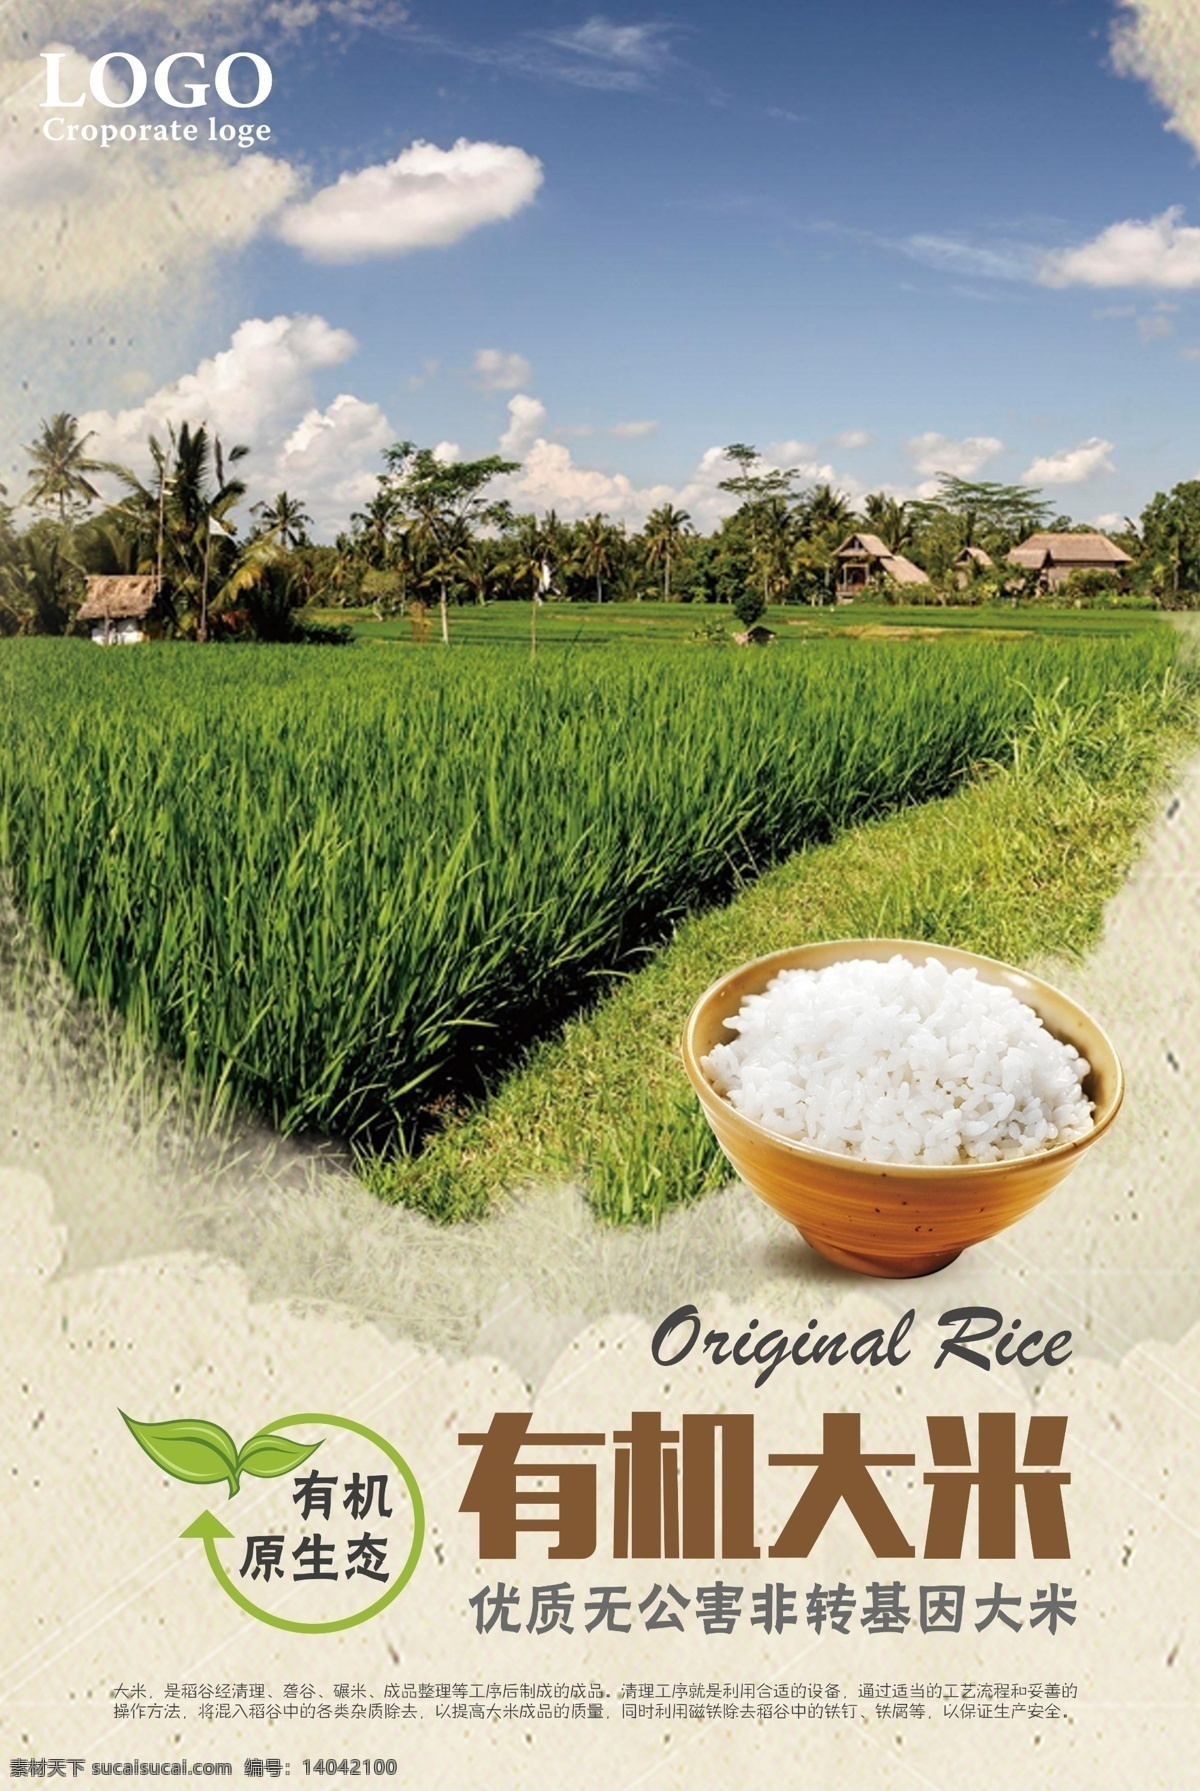 有机大米 有机 大米 生态 无公害 非转基因 优质 稻田 蓝天